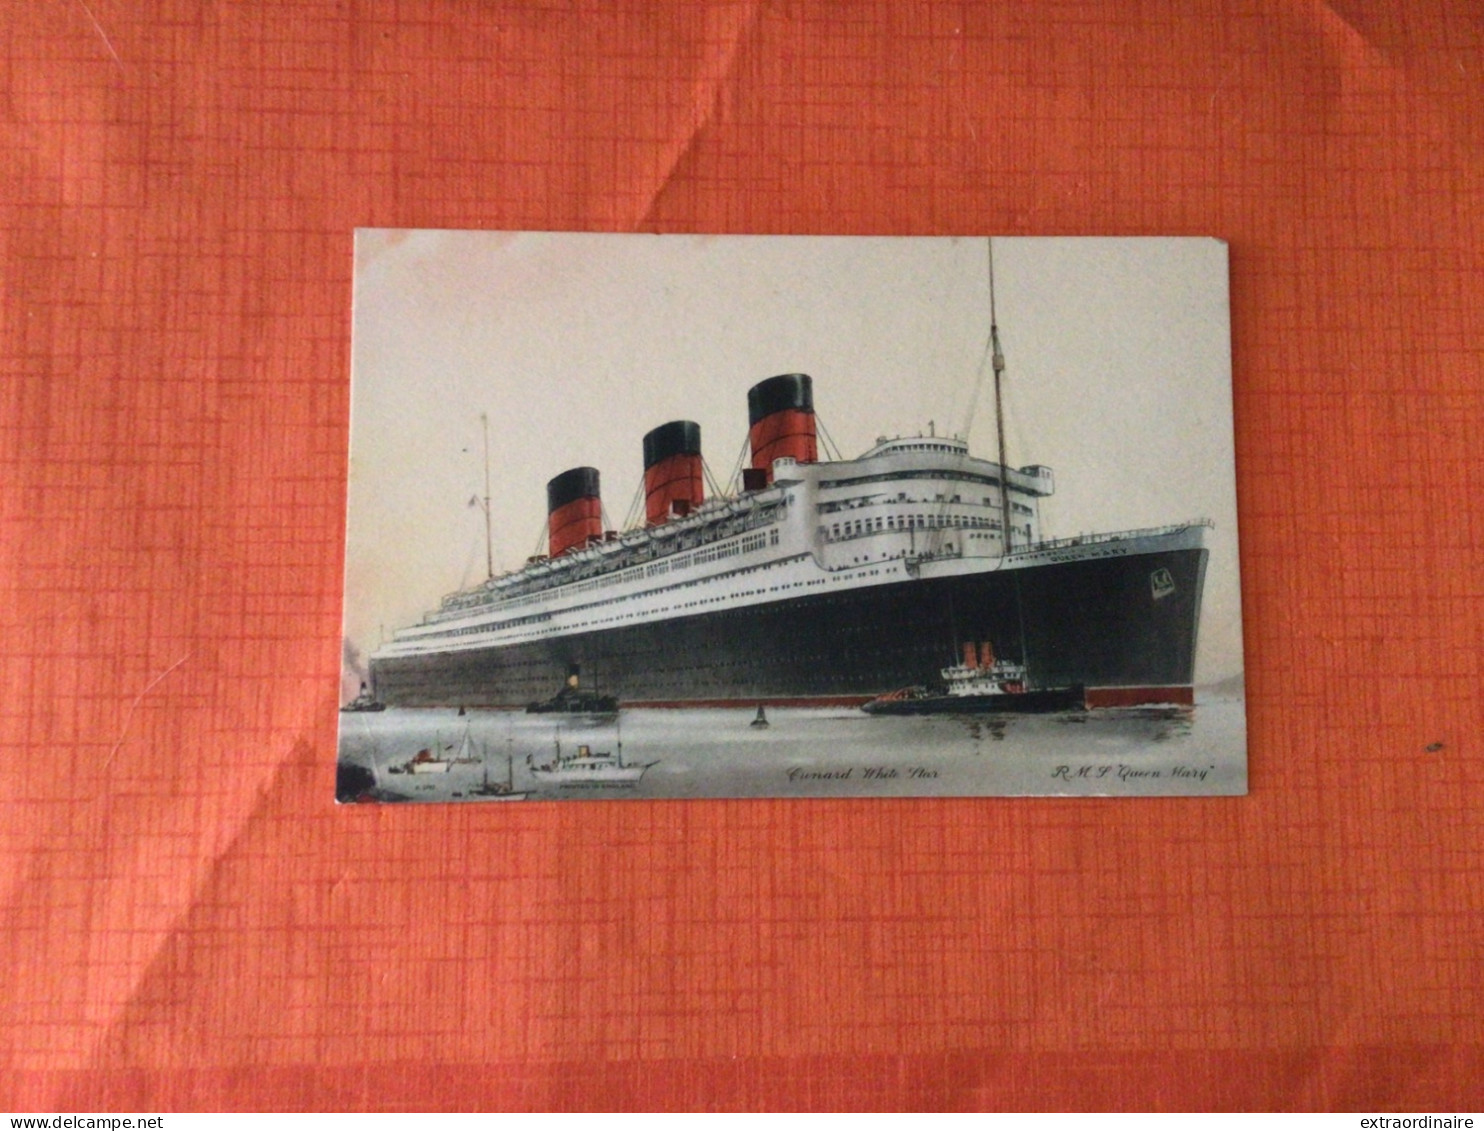 Bateau Cunard White Star R.M.S. Queen Mary  No. 509 - Art